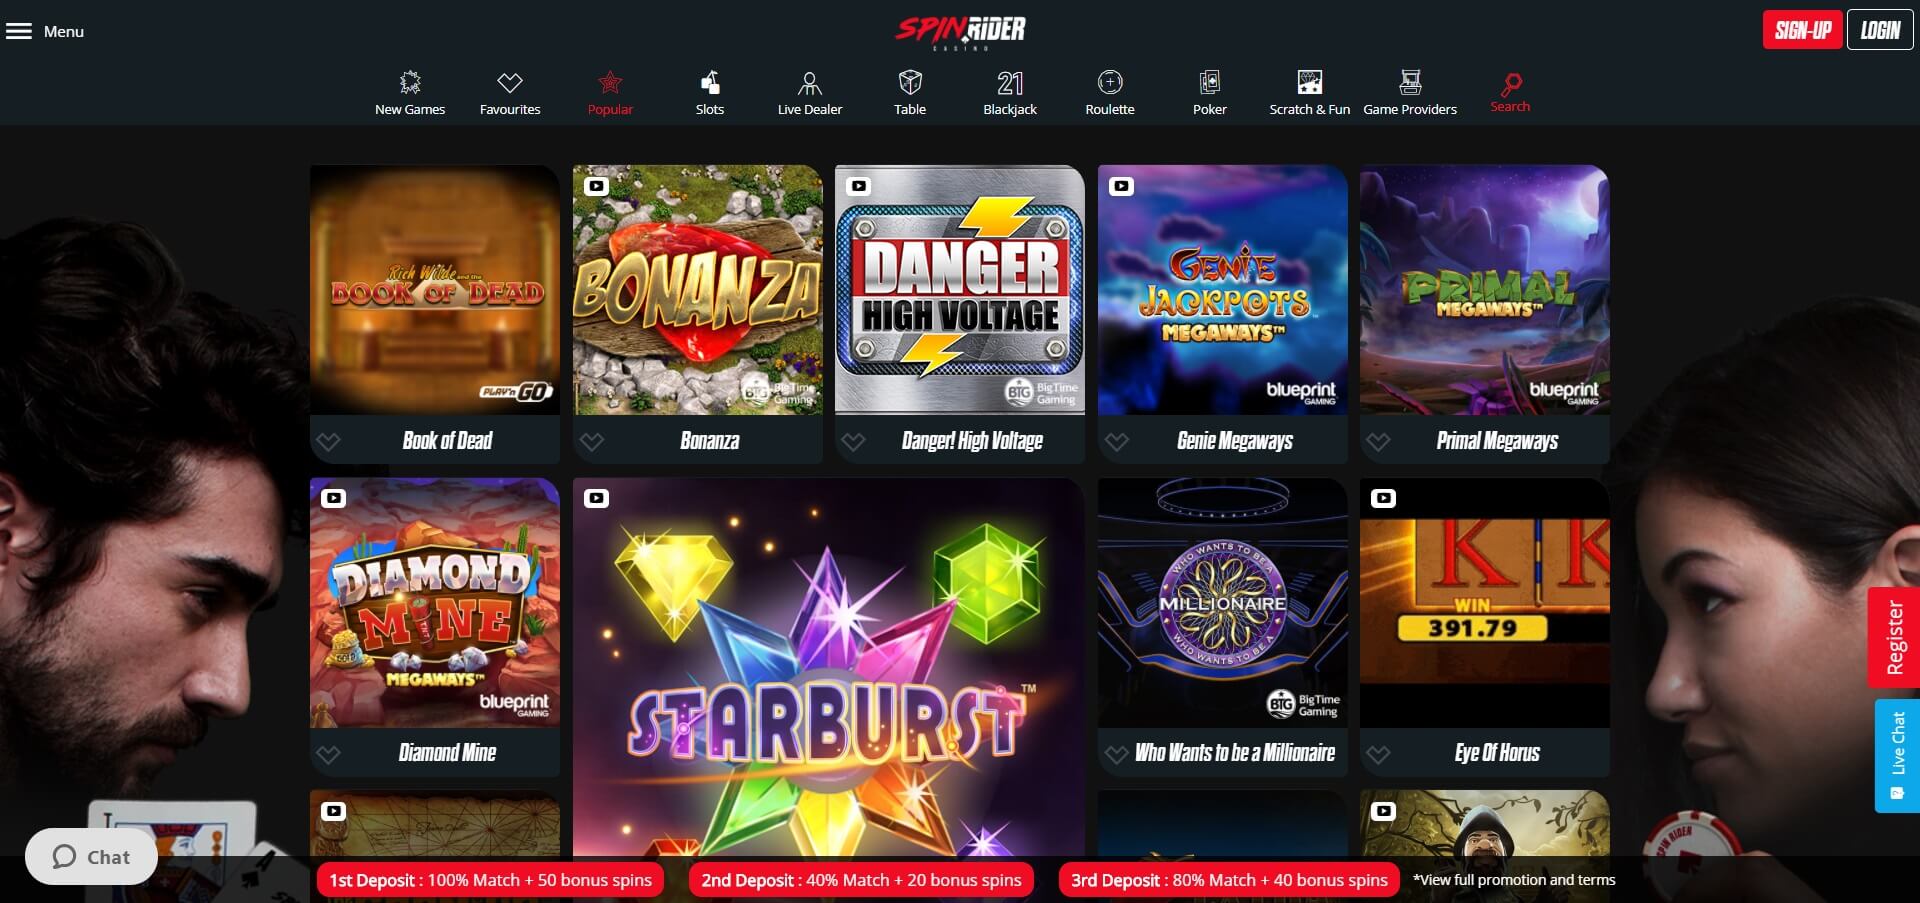 spinrider casino games slots